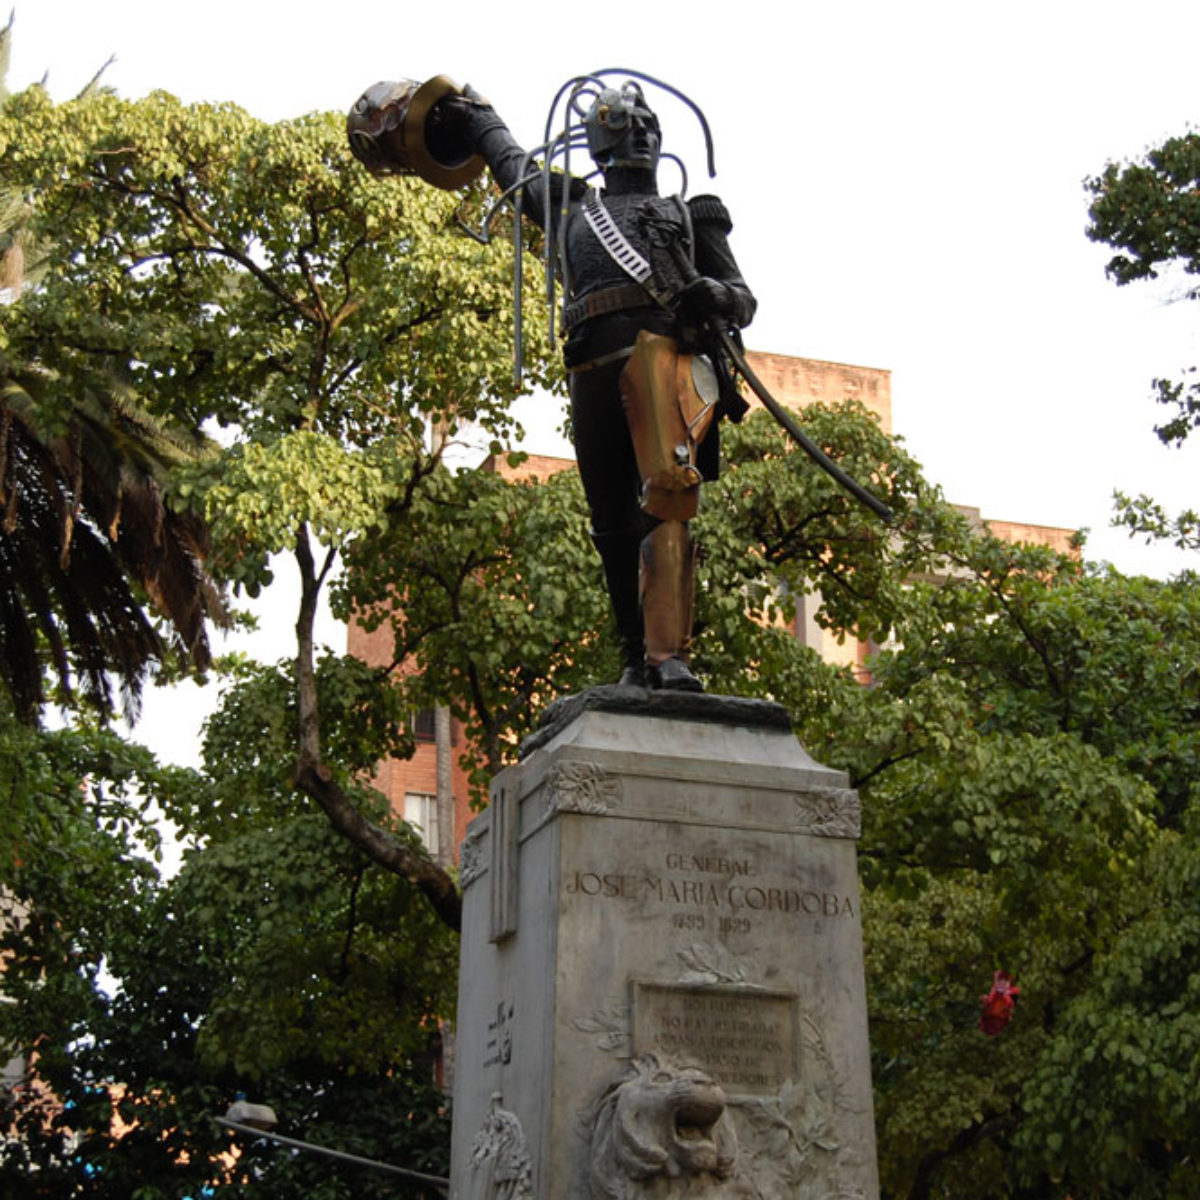 La escultura de Córdova está ubicada en el Parque de Boston en Medellín, intervenida con objetos Steampunk en 2015.